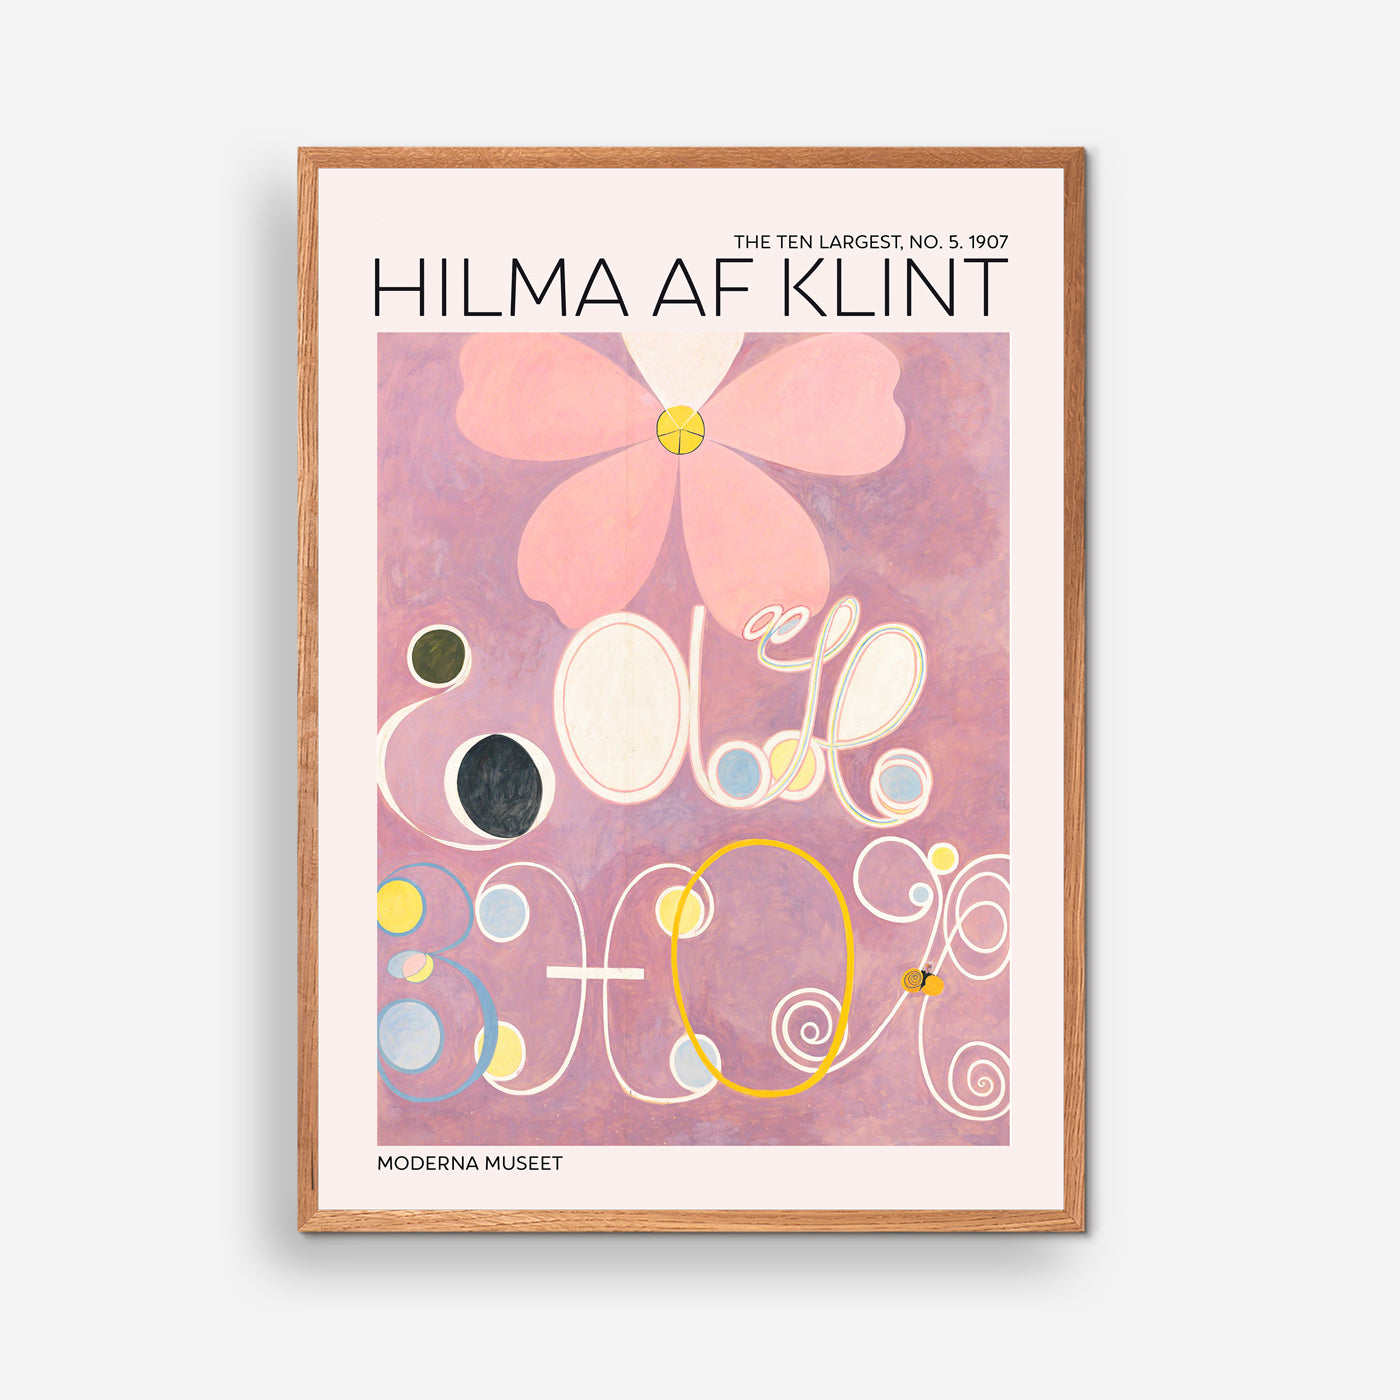 The Ten Largest No. 5 - Hilma Af Klint